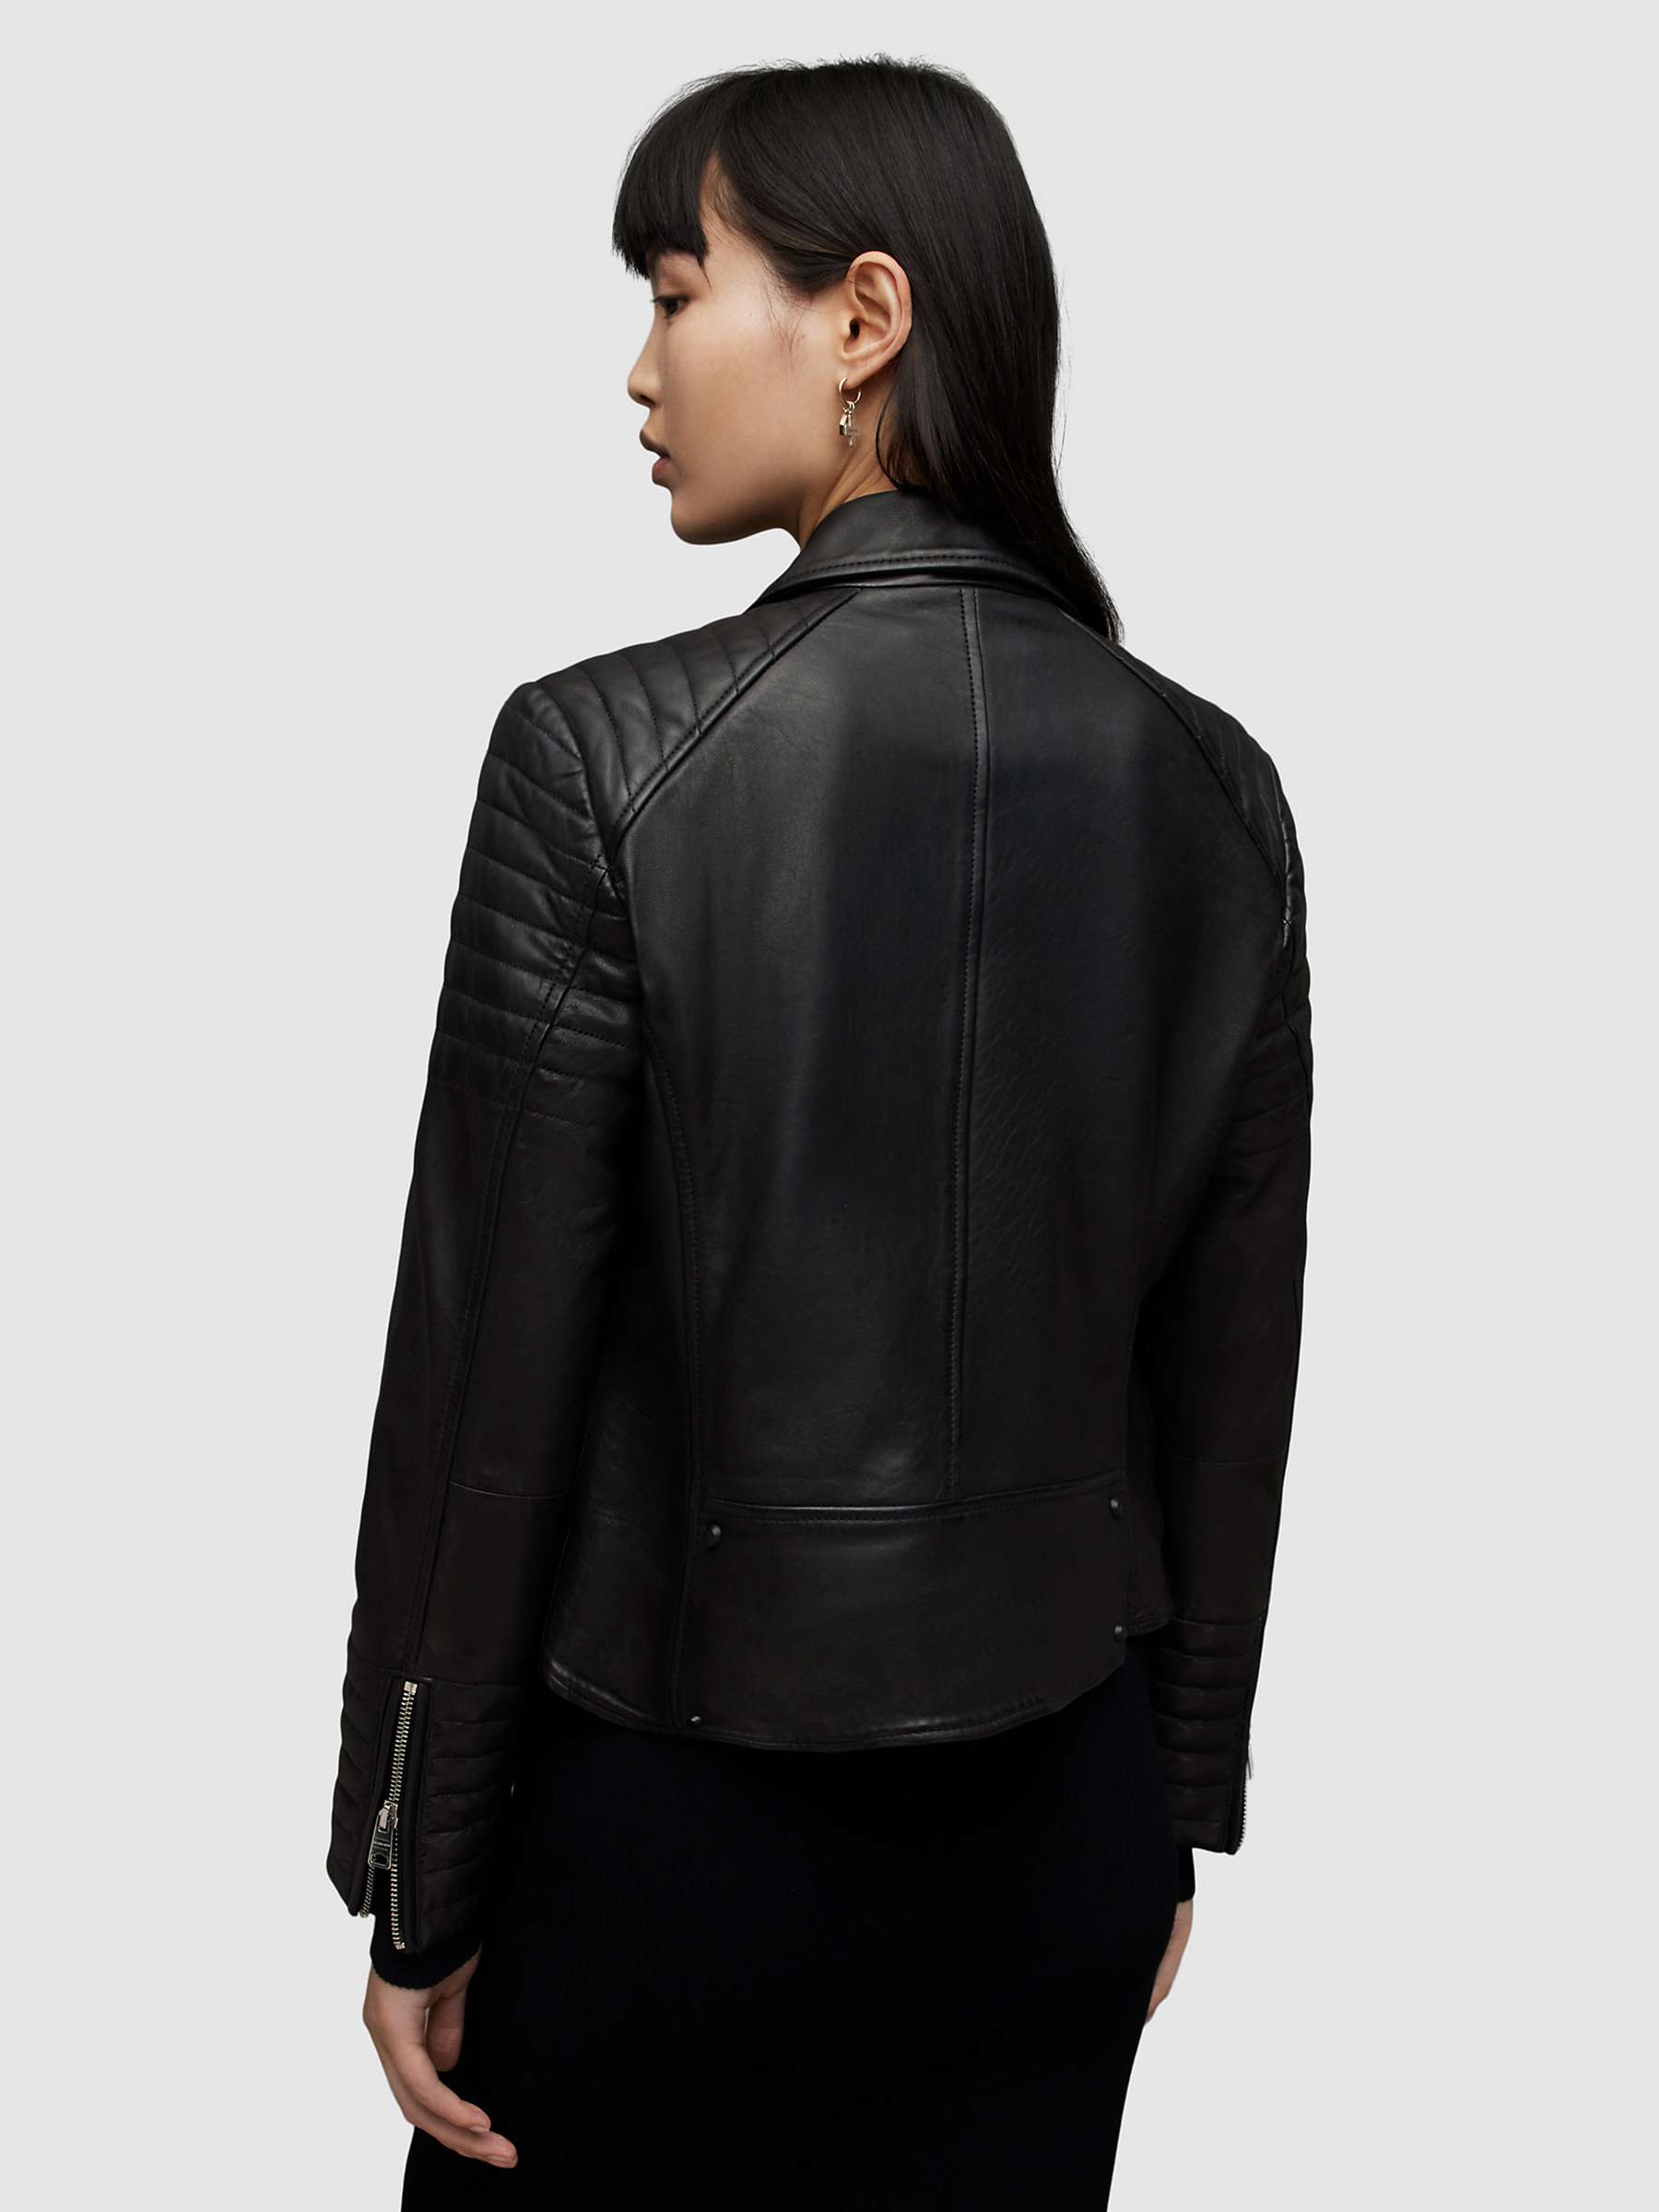 Buy AllSaints Leoni Leather Biker Jacket, Black Online at johnlewis.com